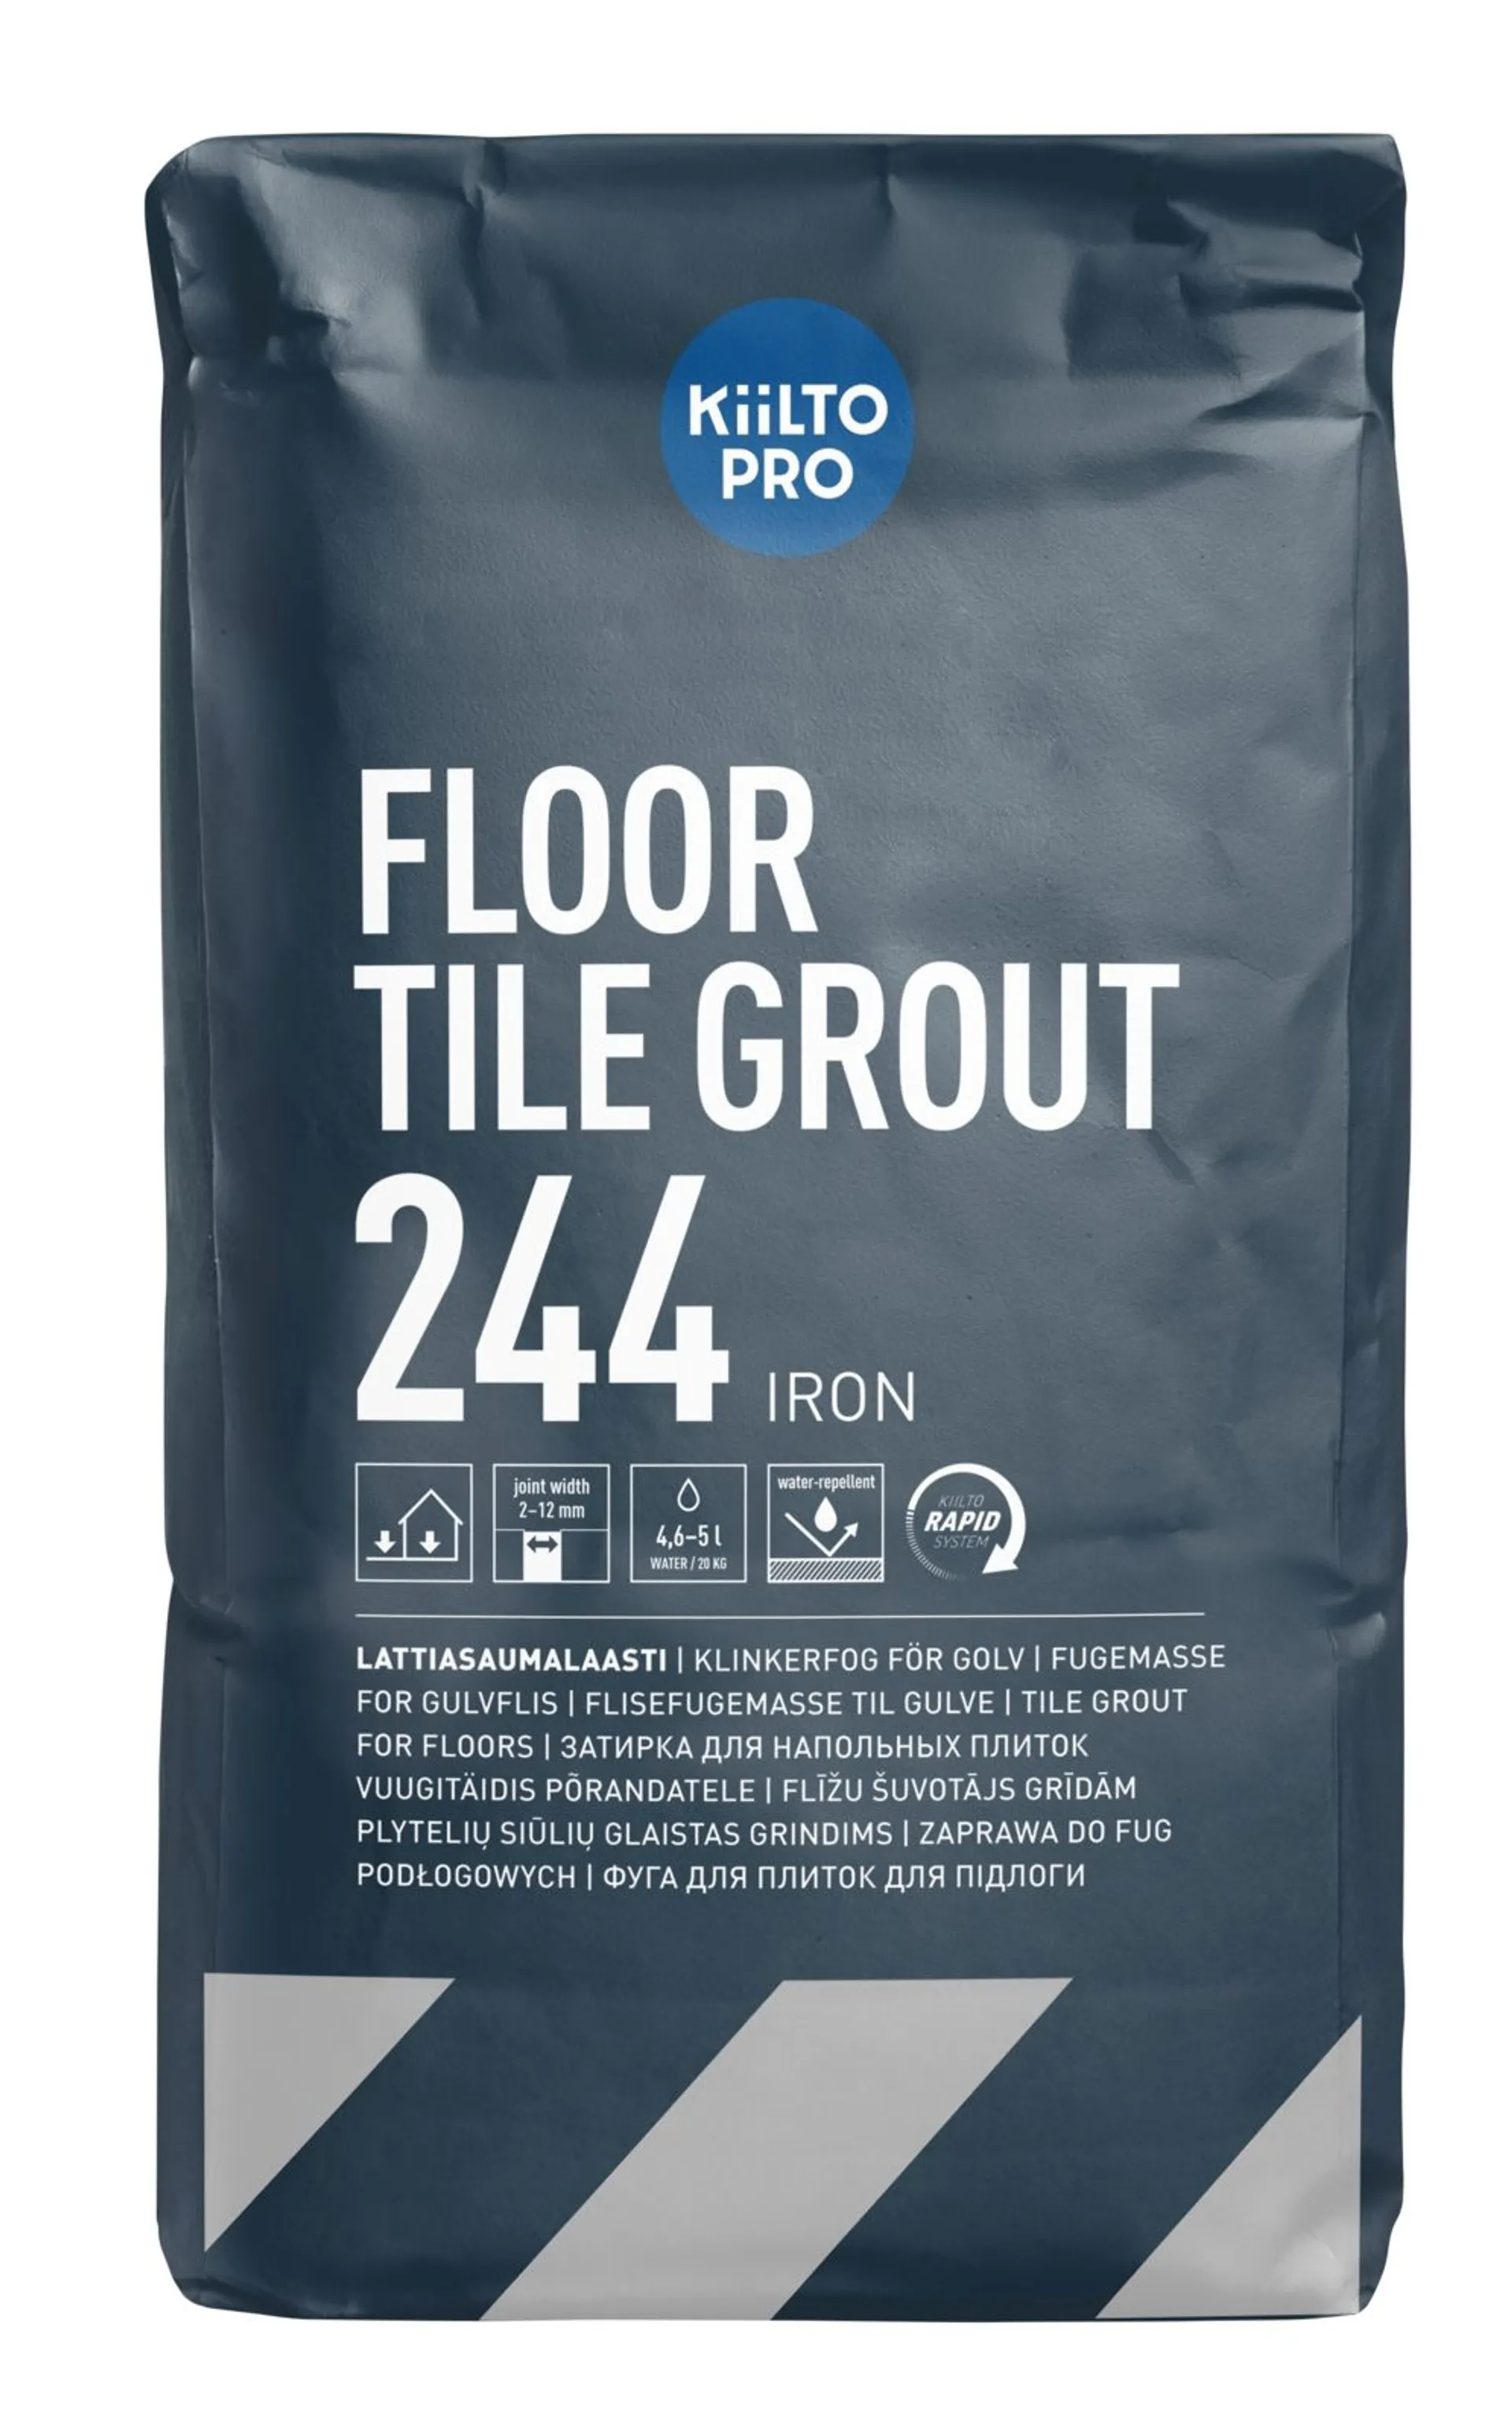 Kiilto Pro Floor Tile grout lattiasaumalaasti 244 iron 20 kg